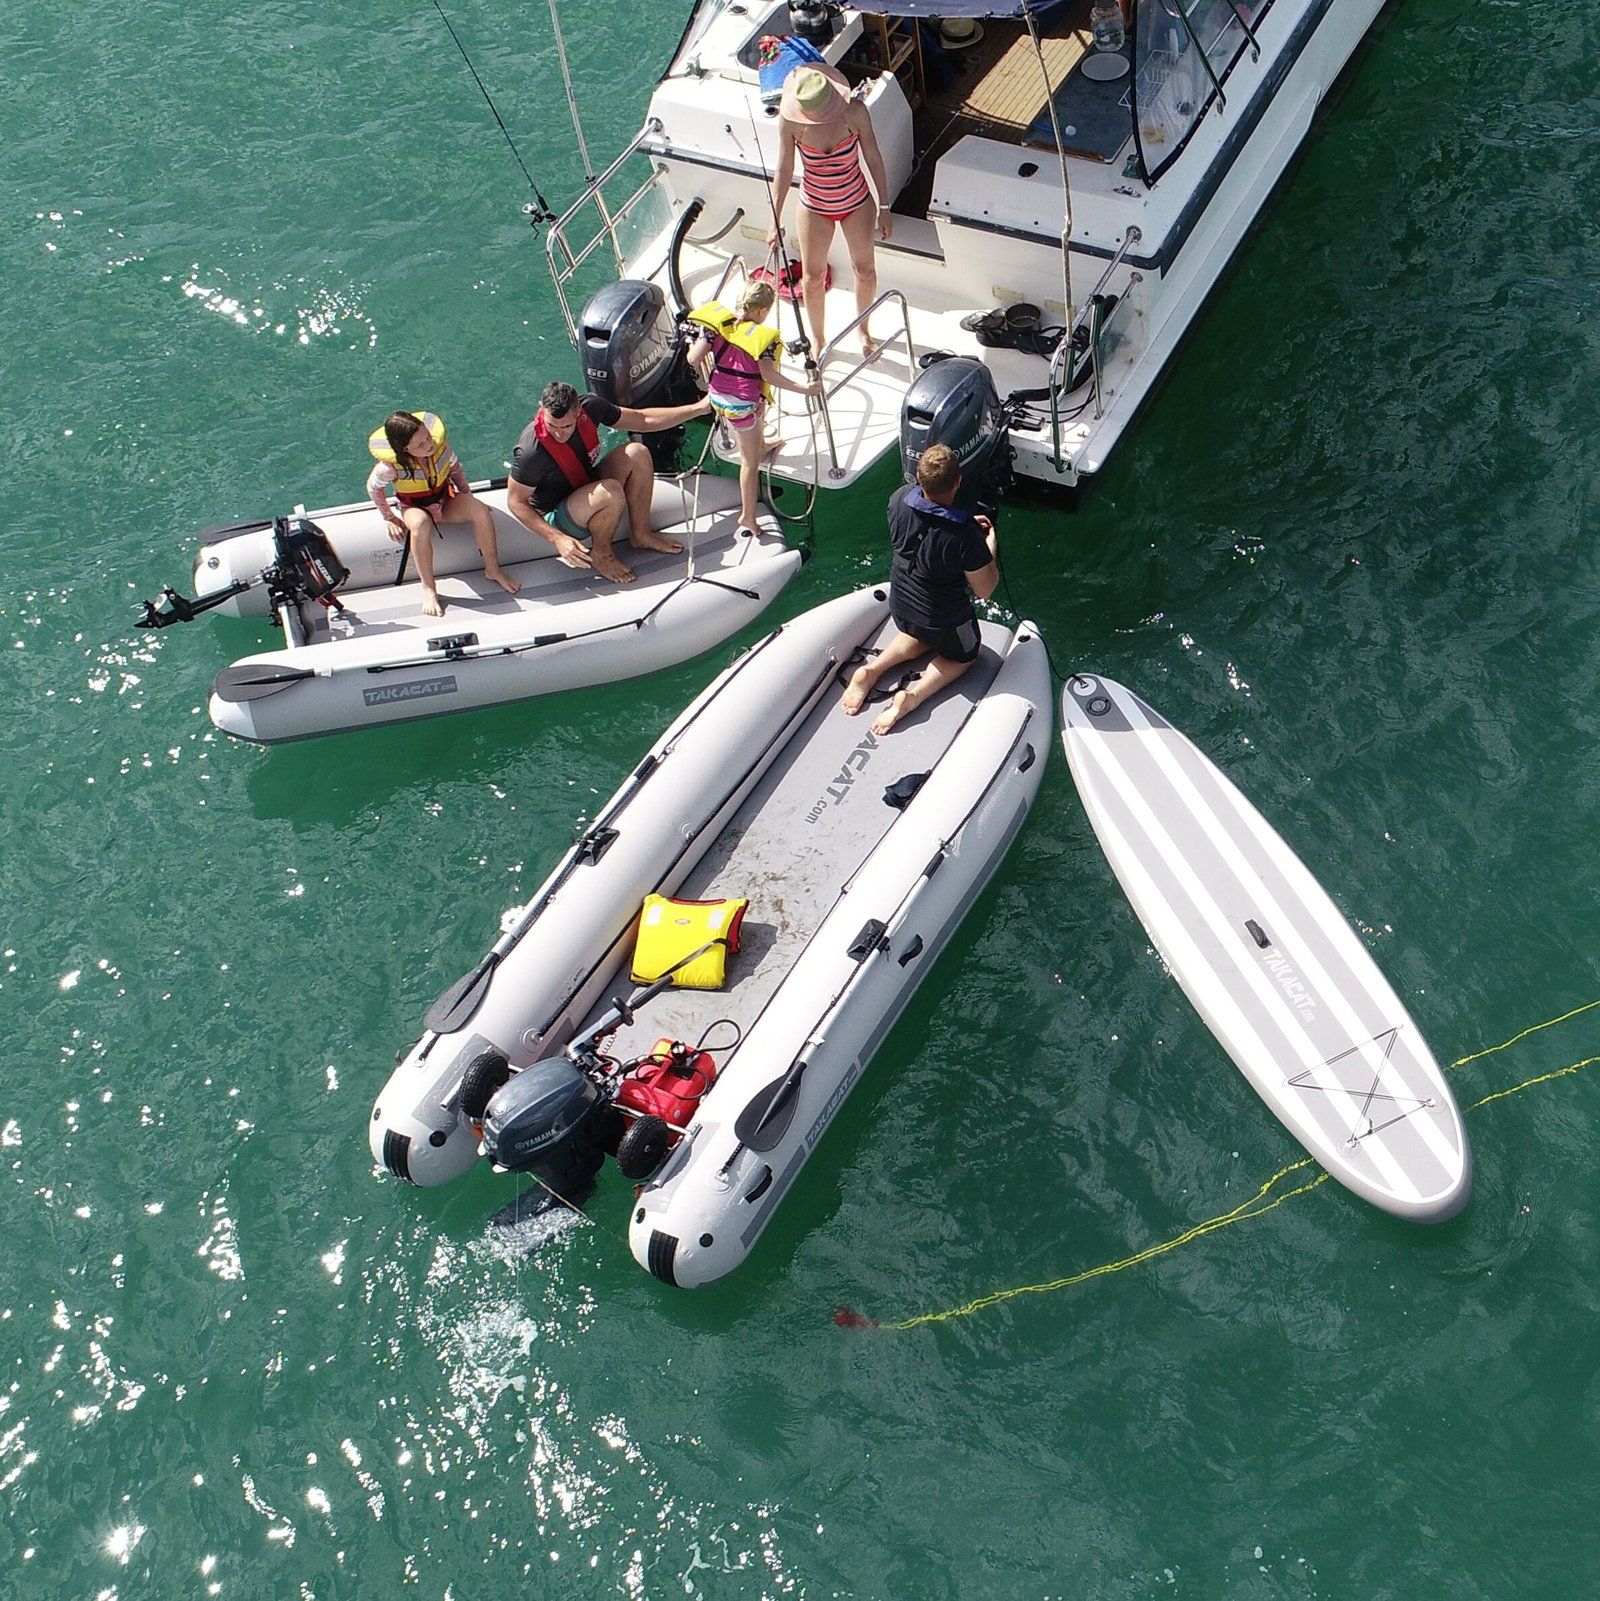 I gommoni da catamarano di Takacat sono leggeri, pieghevoli, veloci e robusti